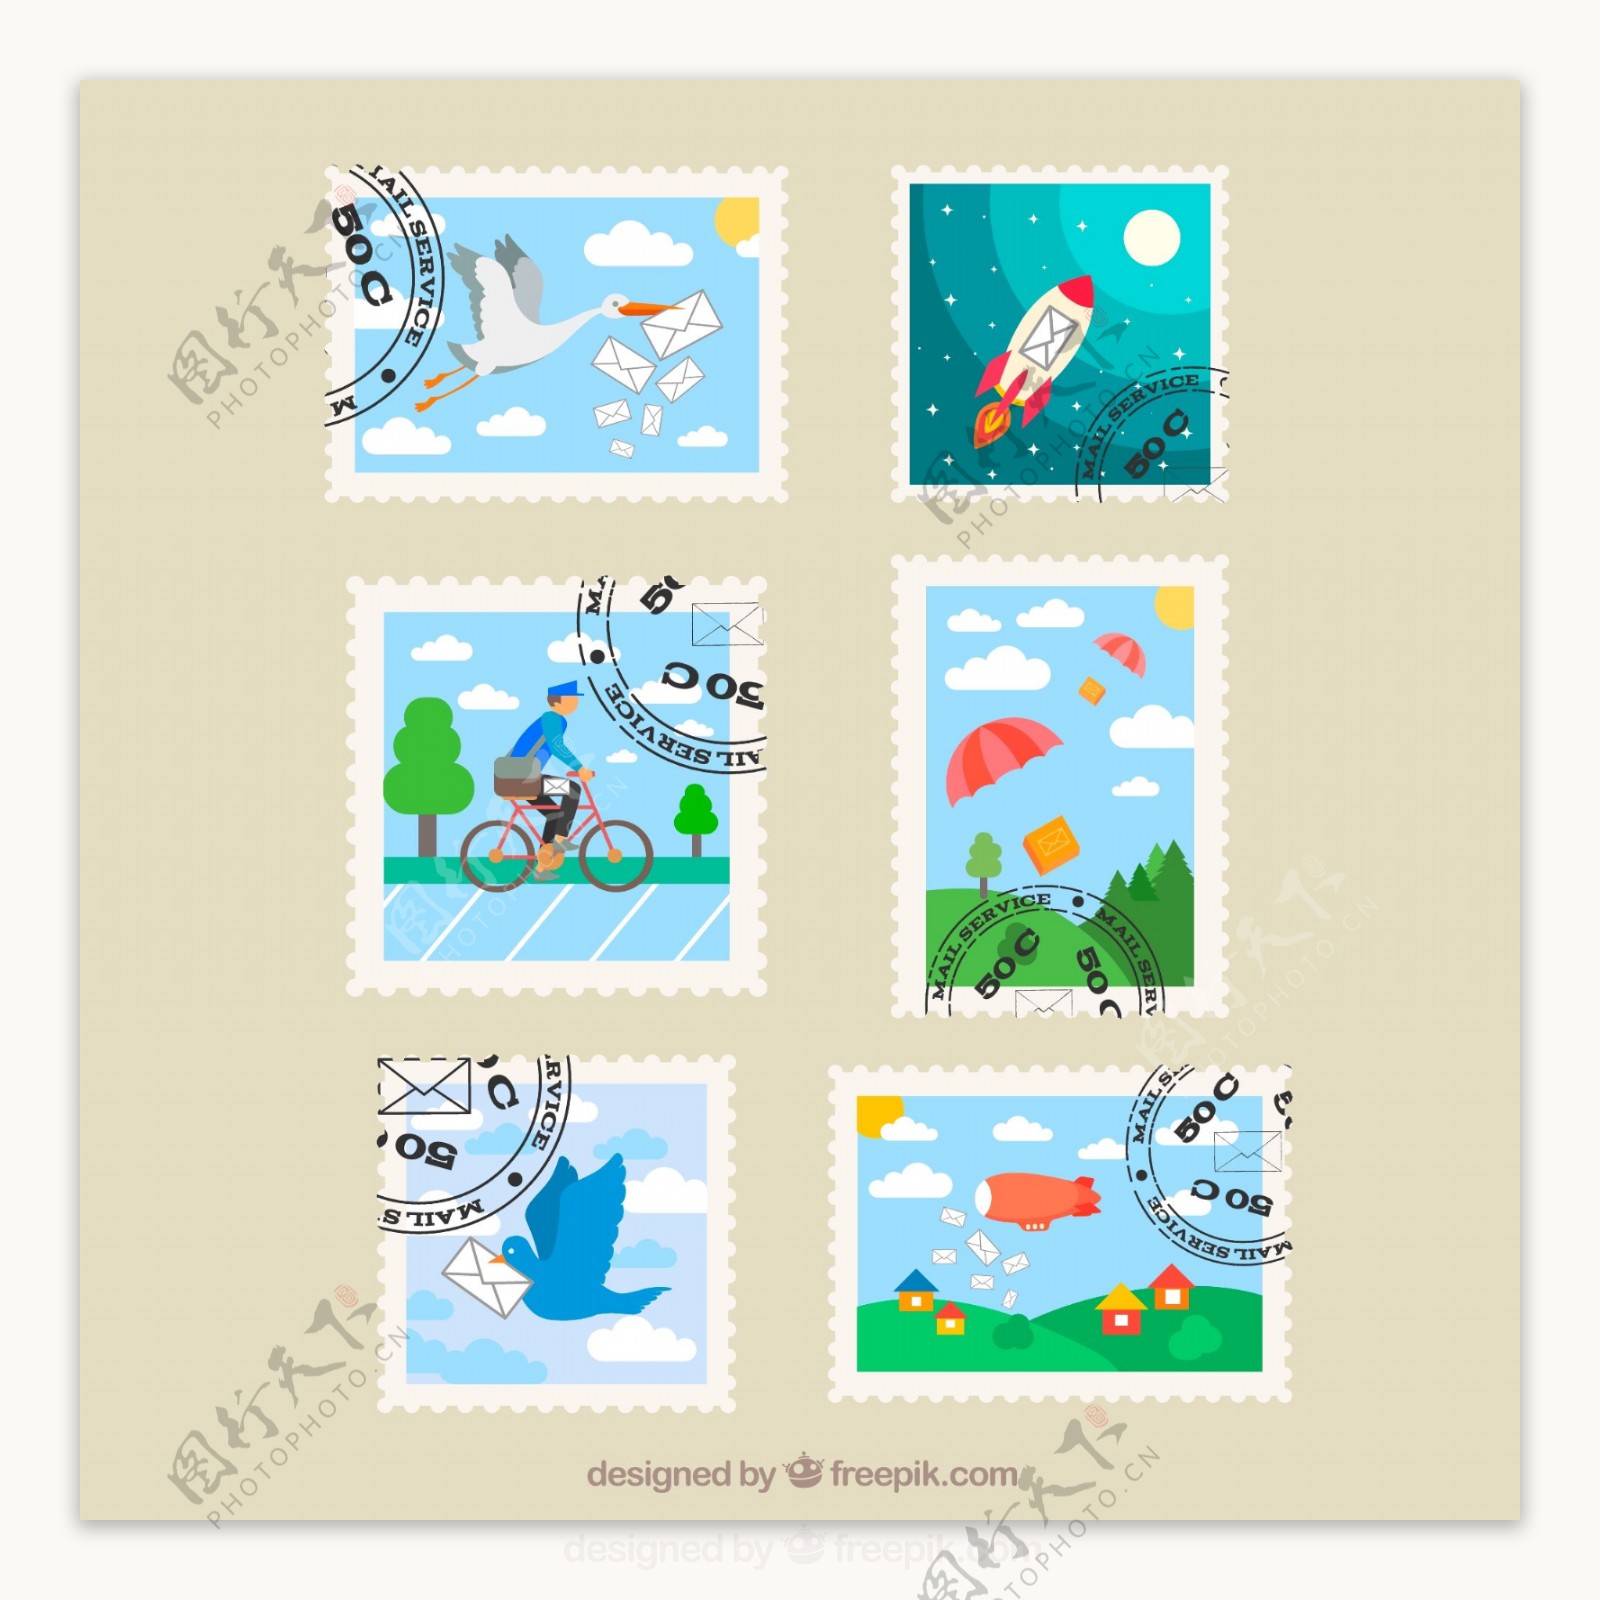 6款清新盖邮戳的邮票设计矢量素材